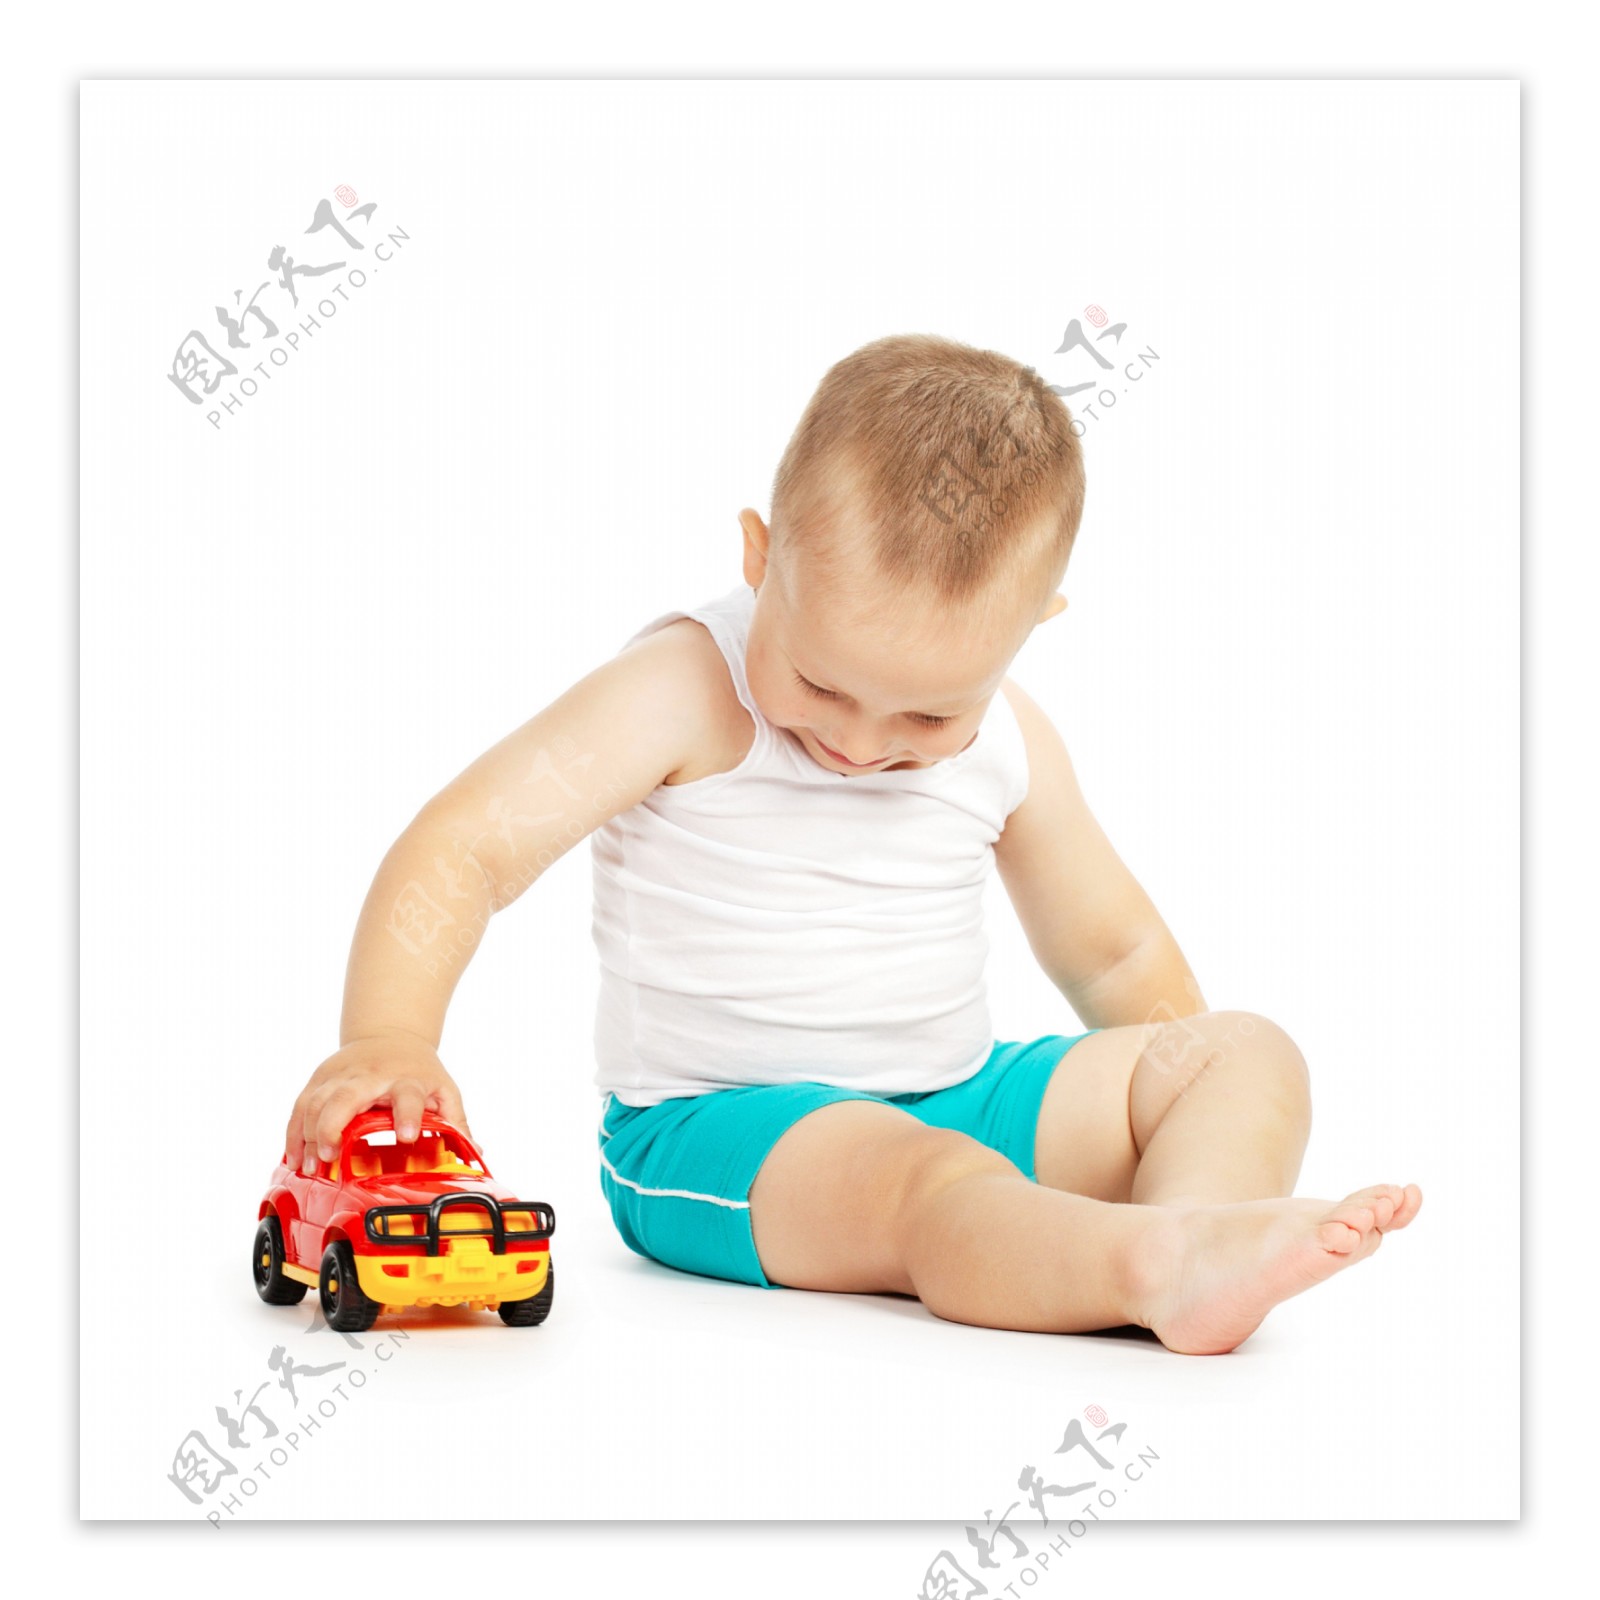 正在玩玩具车的男孩图片